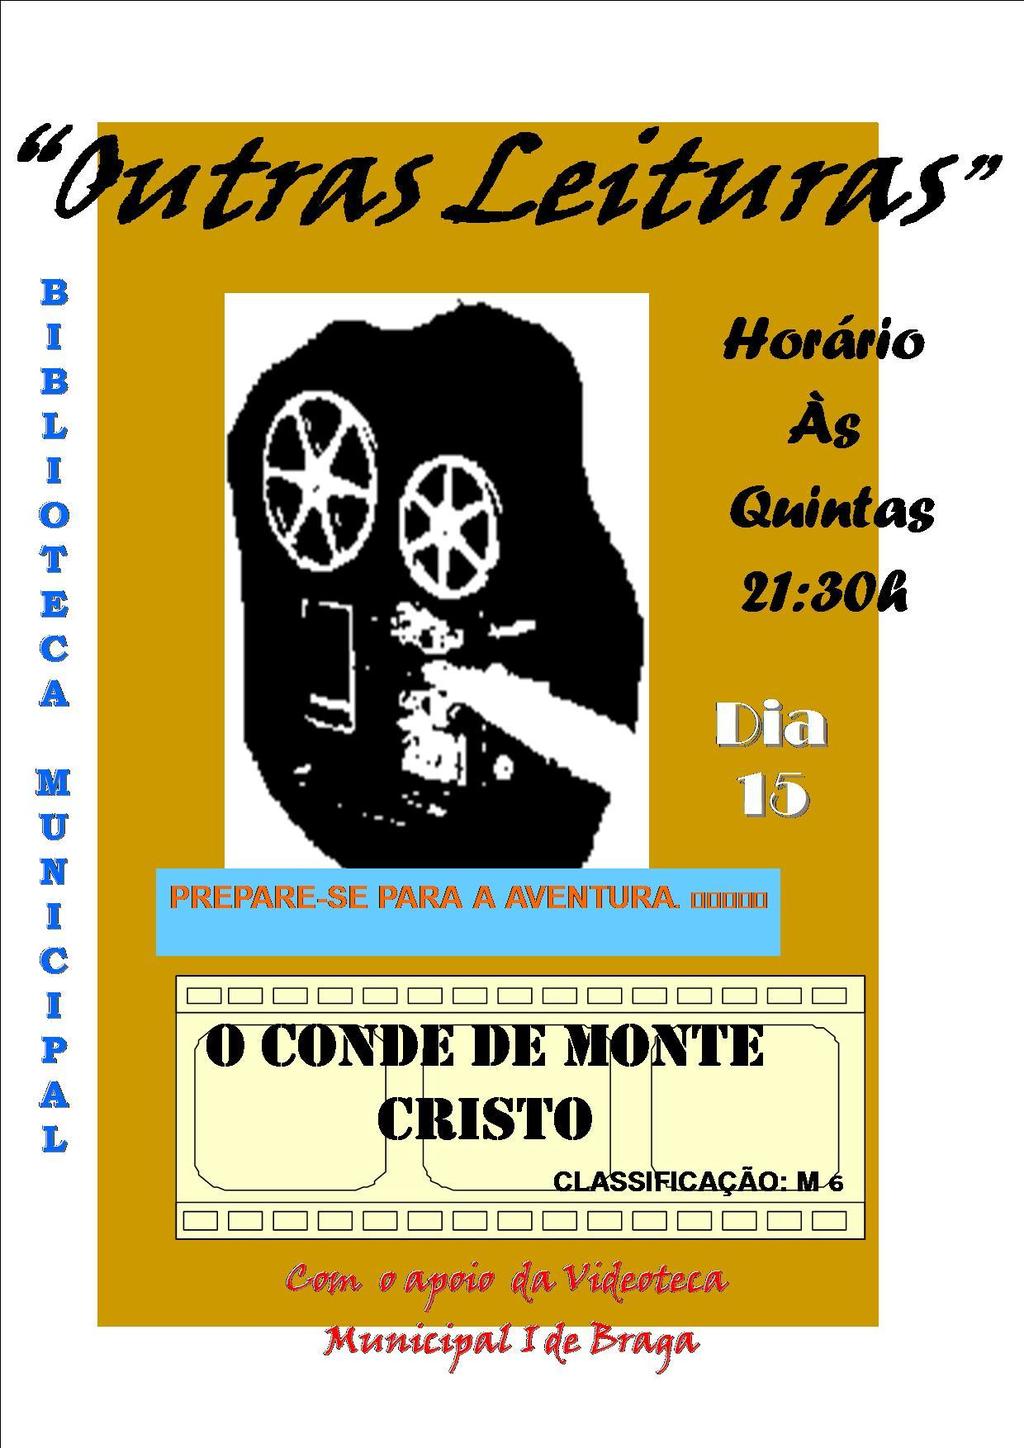 Filme "O Conde de Monte Cristo" na próxima 5.ª feira à noite no Auditório da Biblioteca Municipal